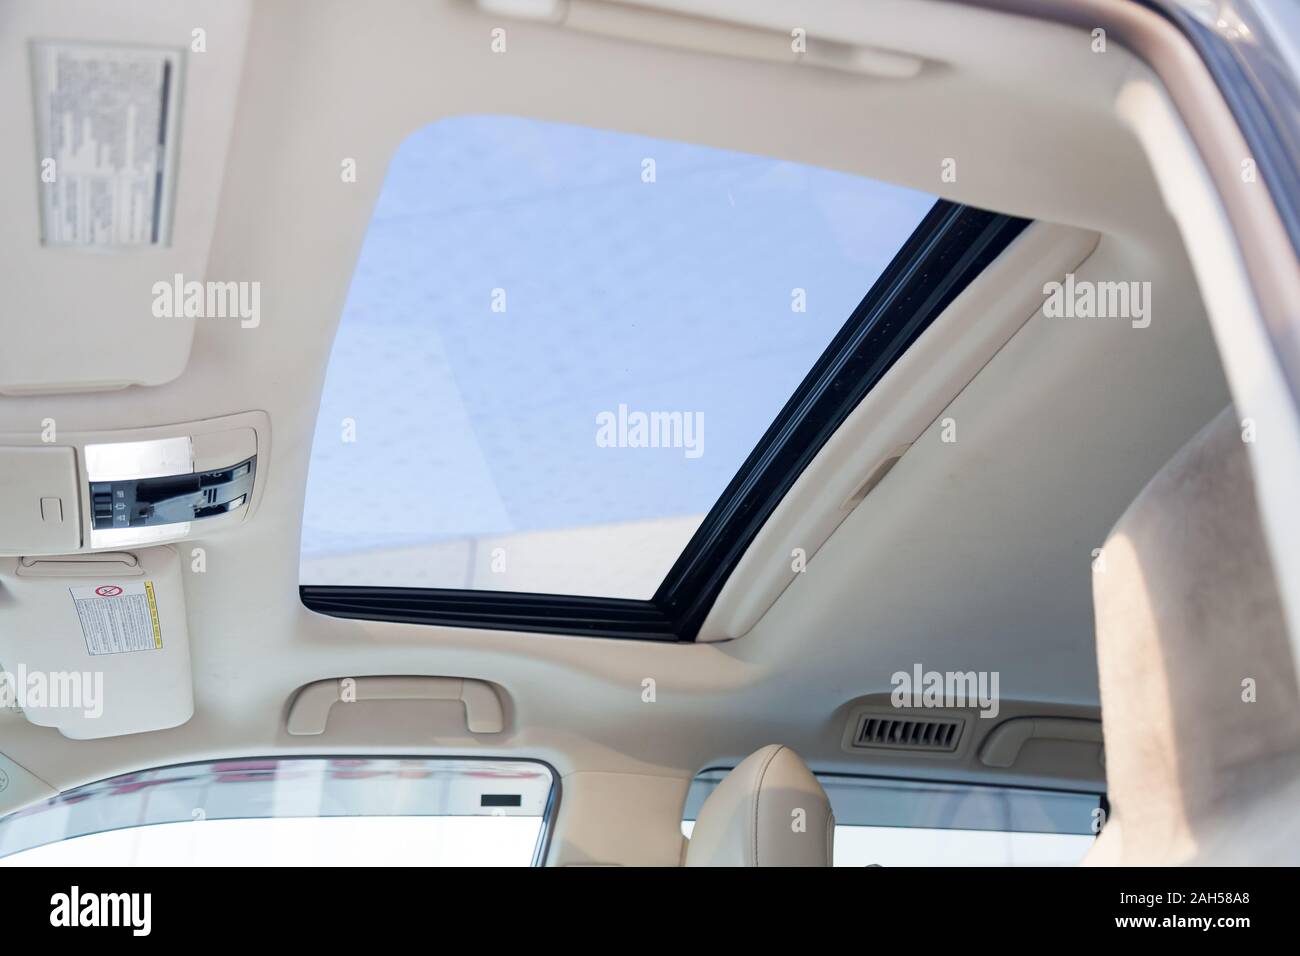 Blick auf die Decke im Auto mit einem transparentem Glas Luke für Lüftung,  Öffnung, so dass sie die Himmel und Wolken in den grauen Kabine der  Fahrzeuge sehen können Stockfotografie - Alamy